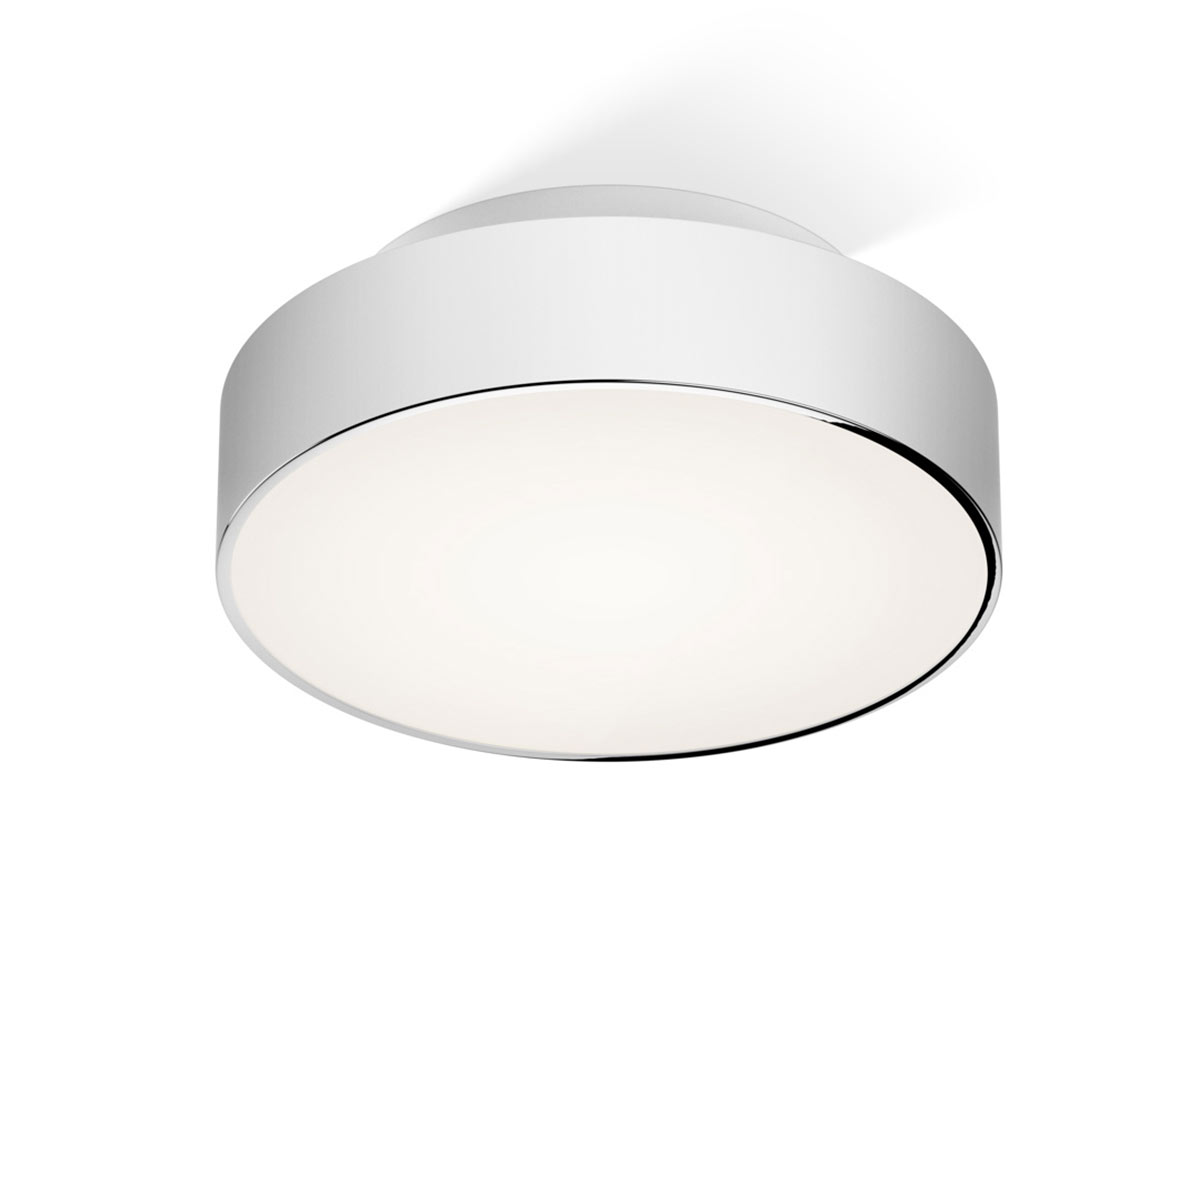 Puristische, kleine Bad-Deckenlampe JOIN LED, Durchmesser ab 26 cm: Das kleine Modell 28 cm, verchromt